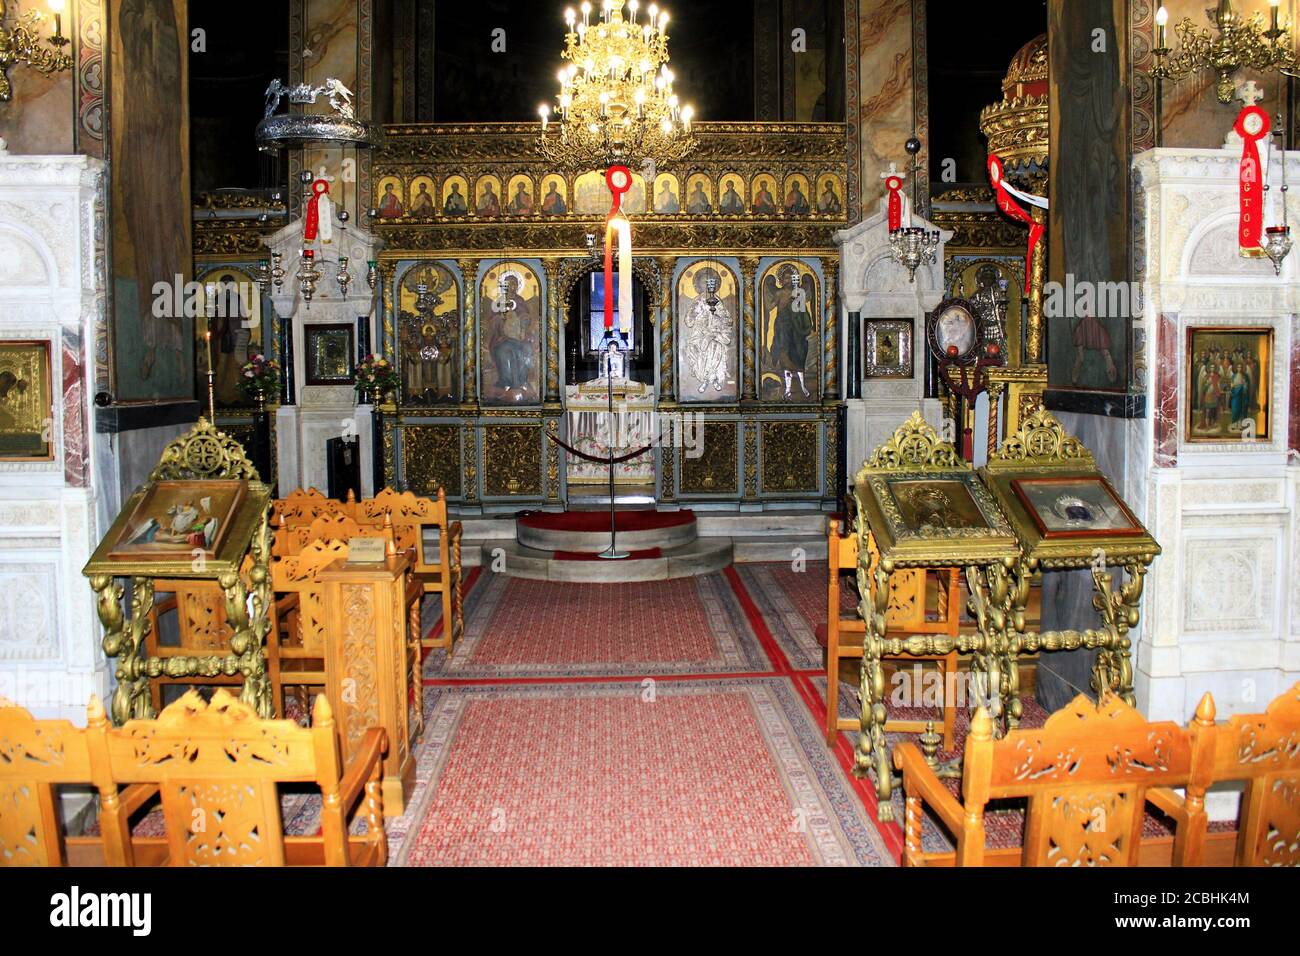 Interno della chiesa ortodossa cristiana ad Atene, Grecia, 6 maggio 2020. Foto Stock